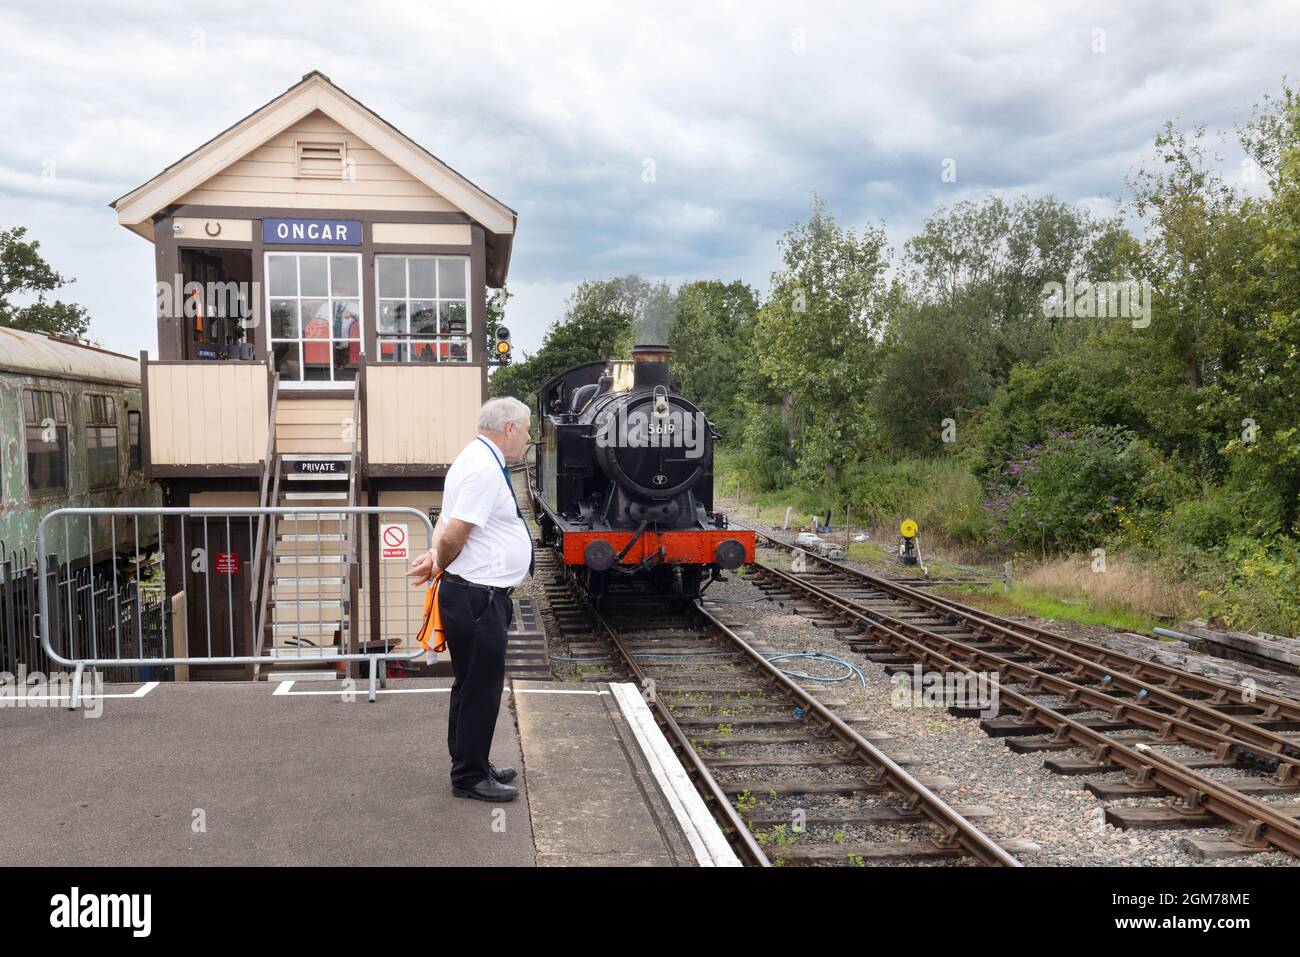 Treno a vapore Regno Unito - locomotiva a vapore che si avvicina alla stazione di Ongar, con segnale box e stationmaster in presenza, Epping-Ongar Heritage Railway Essex UK Foto Stock